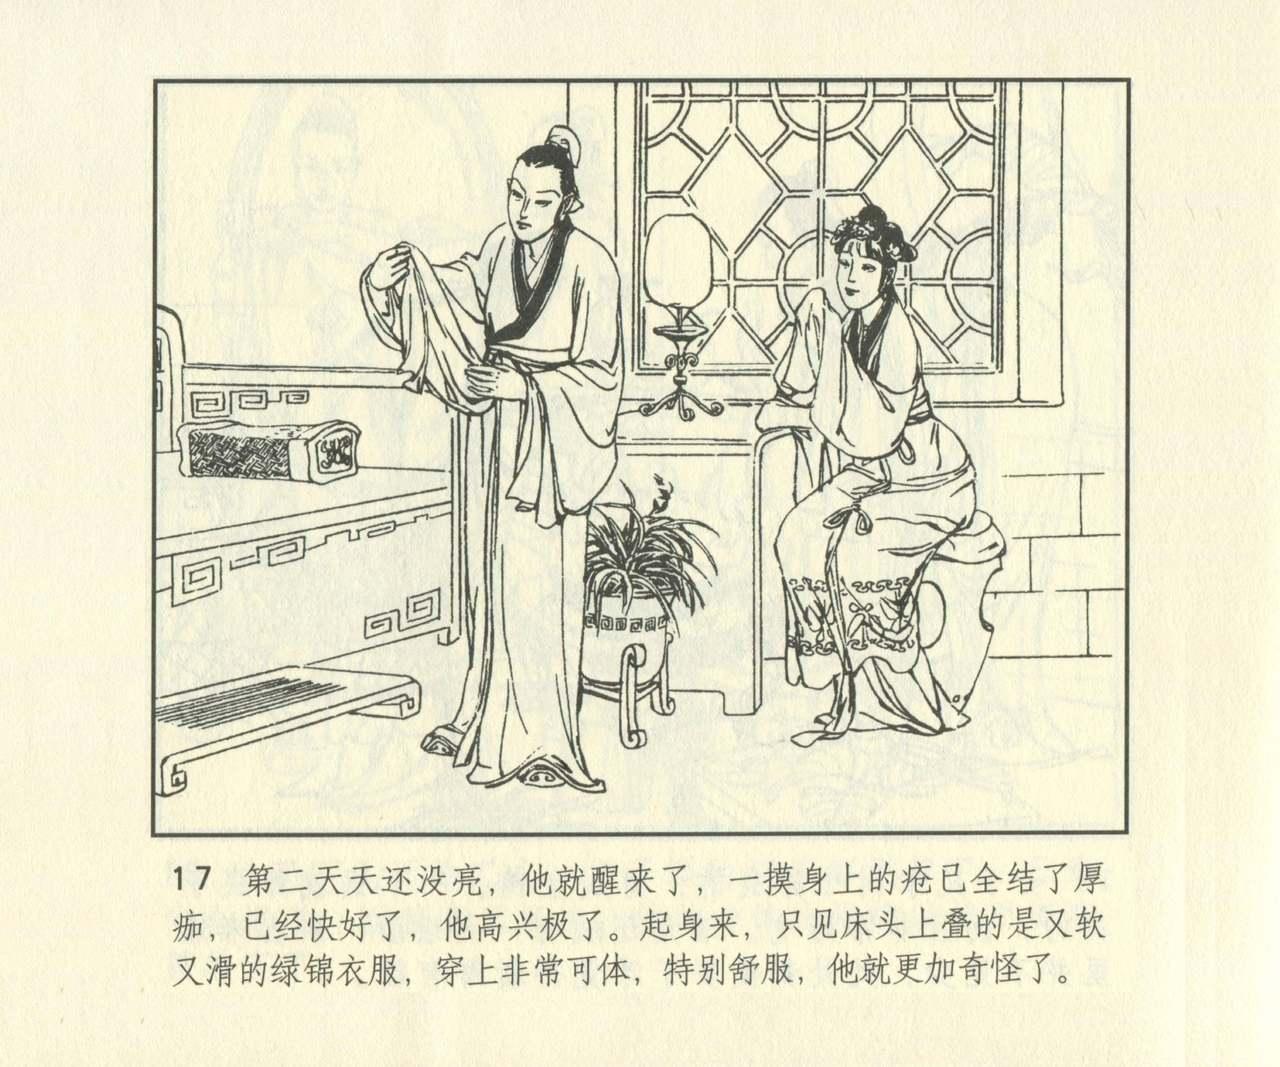 聊斋志异 张玮等绘 天津人民美术出版社 卷二十一 ~ 三十 633